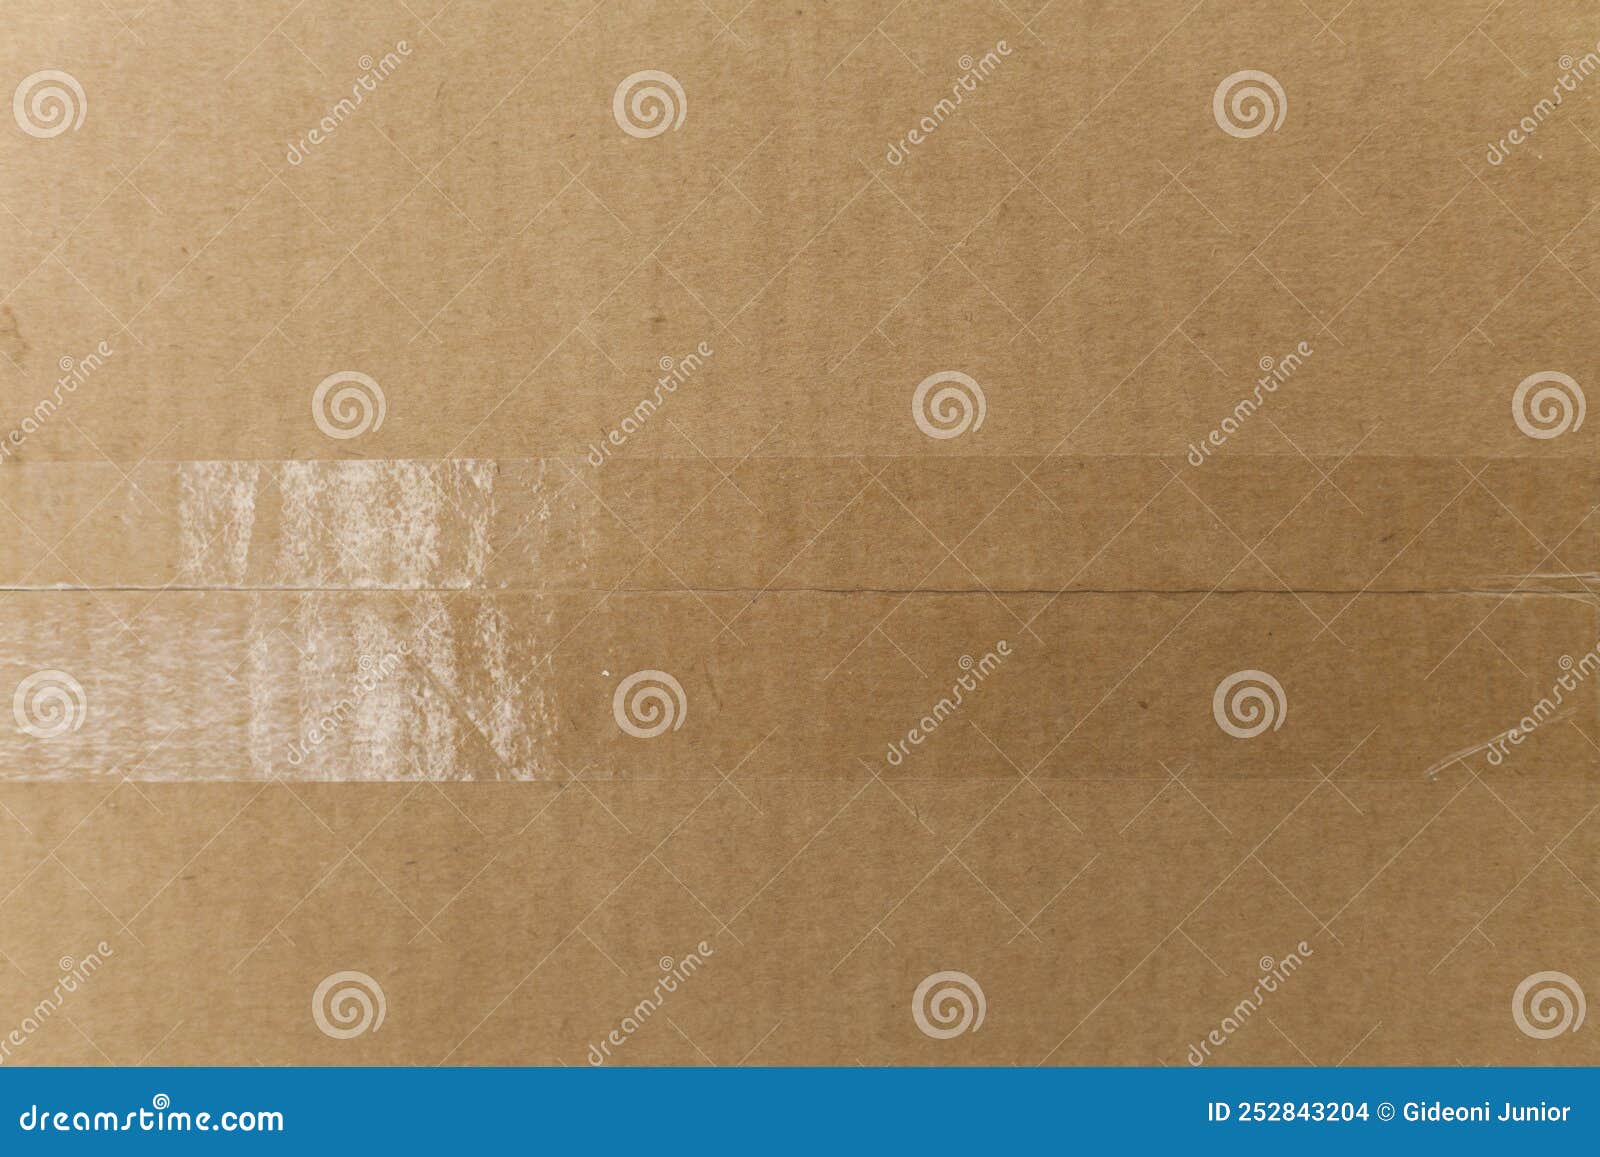 detail of an unwritten cardboard box.